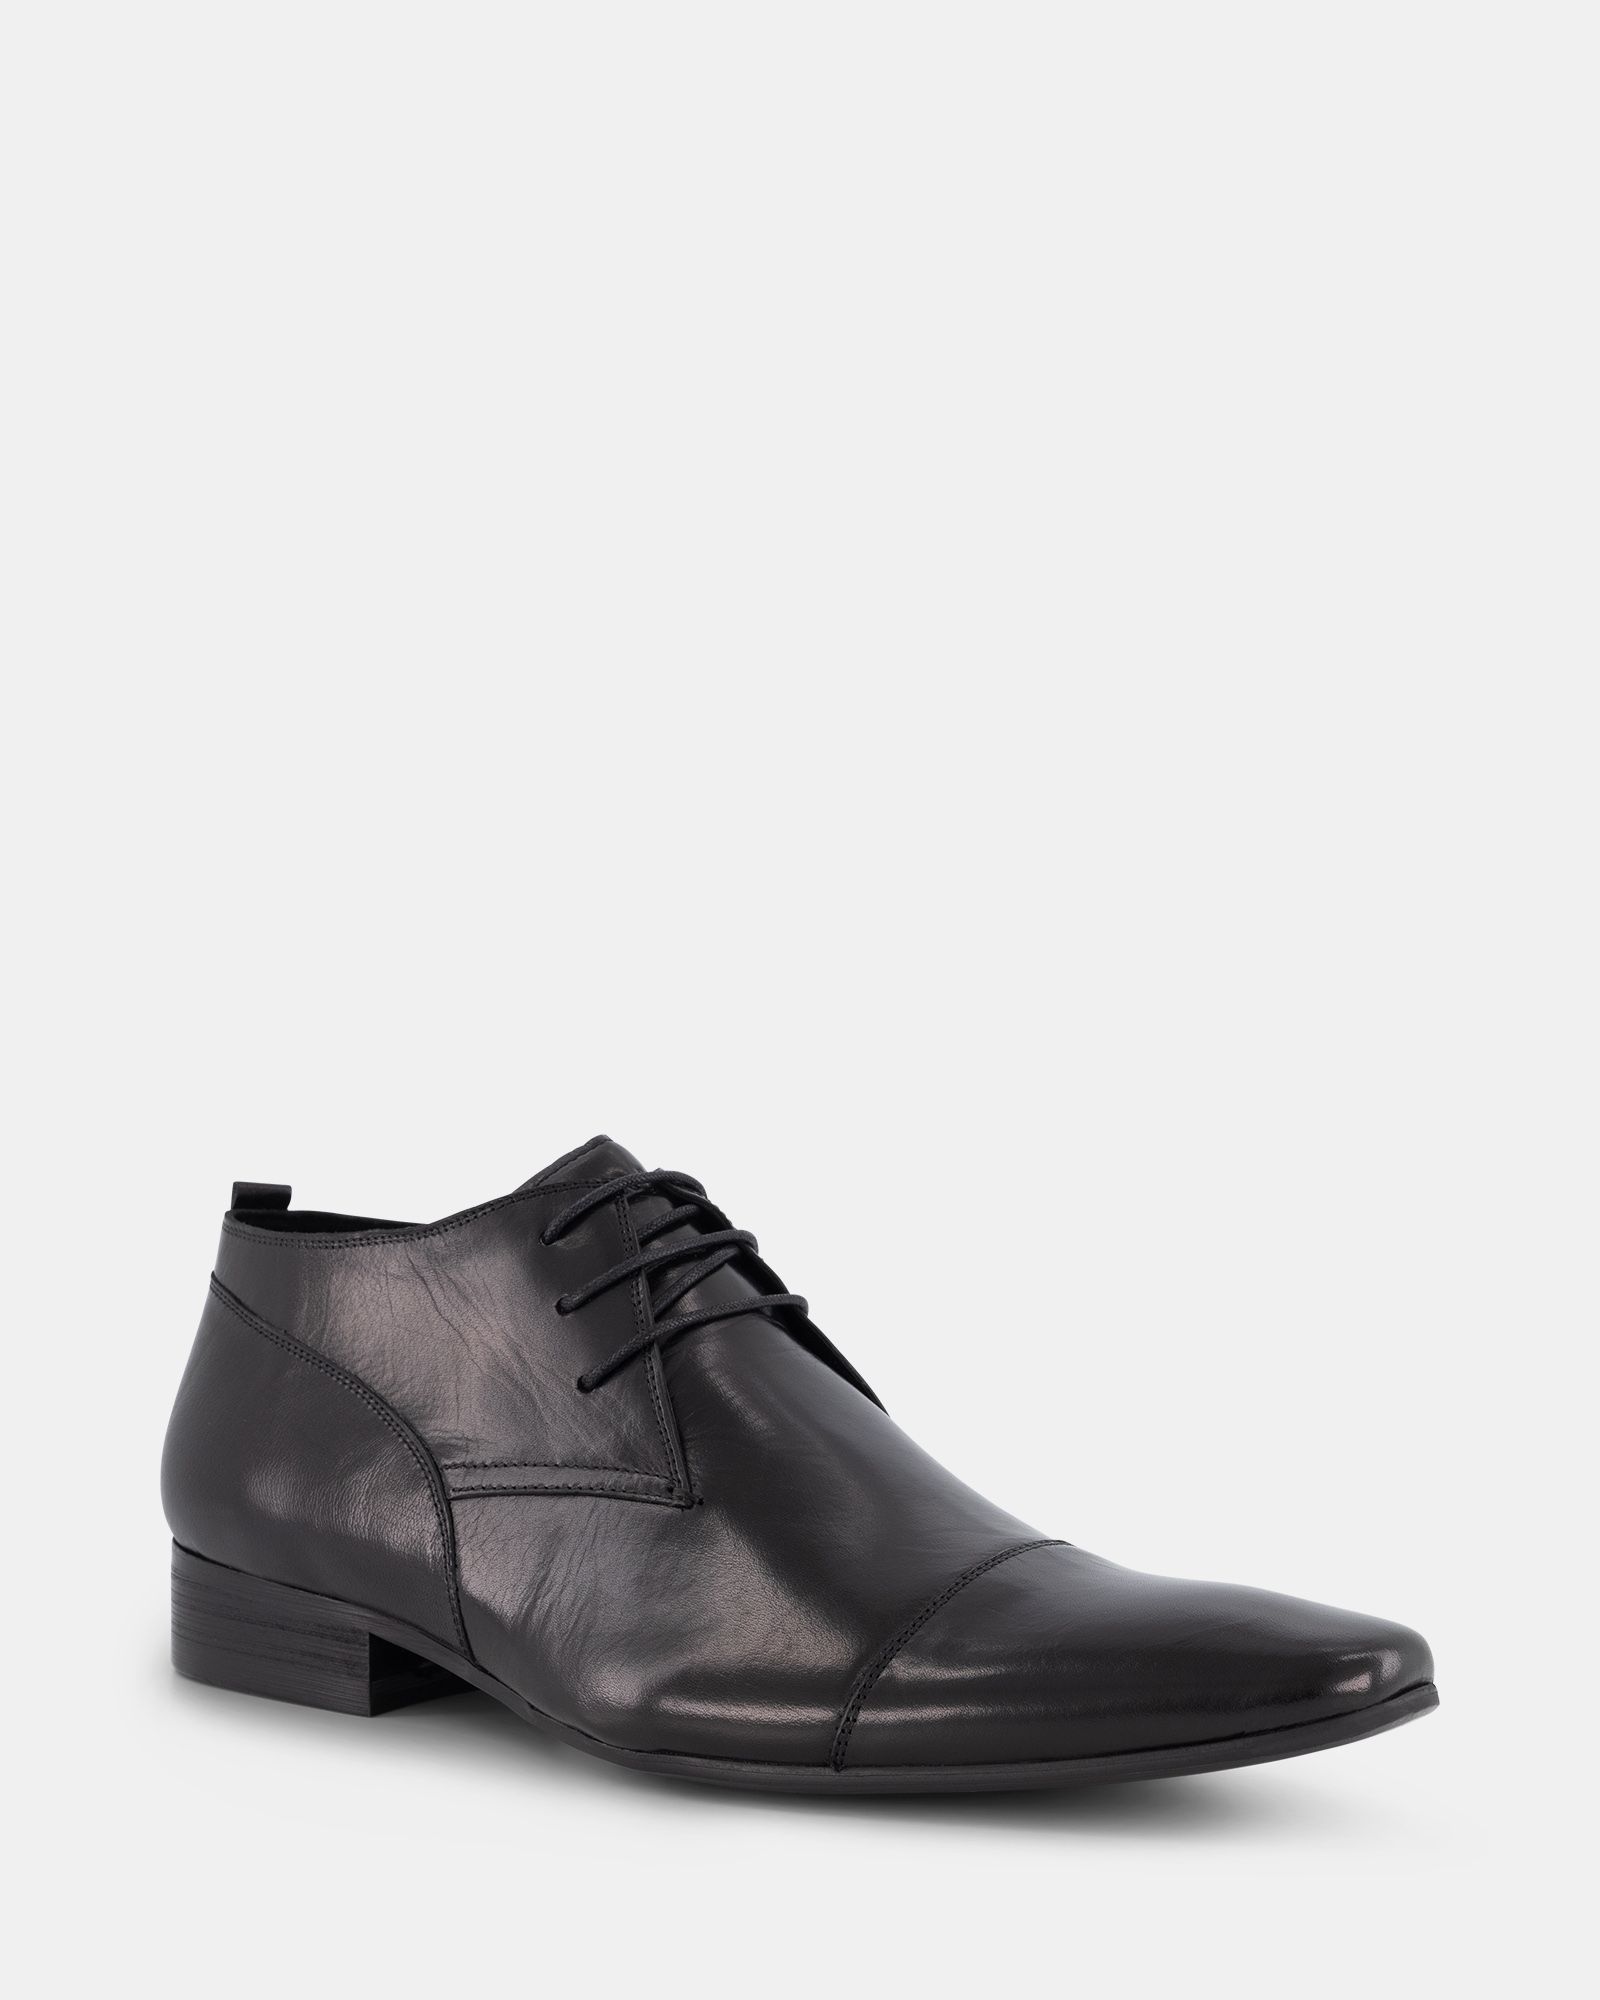 Peter James Saville Row Dress - Black | Shoe Connection AU